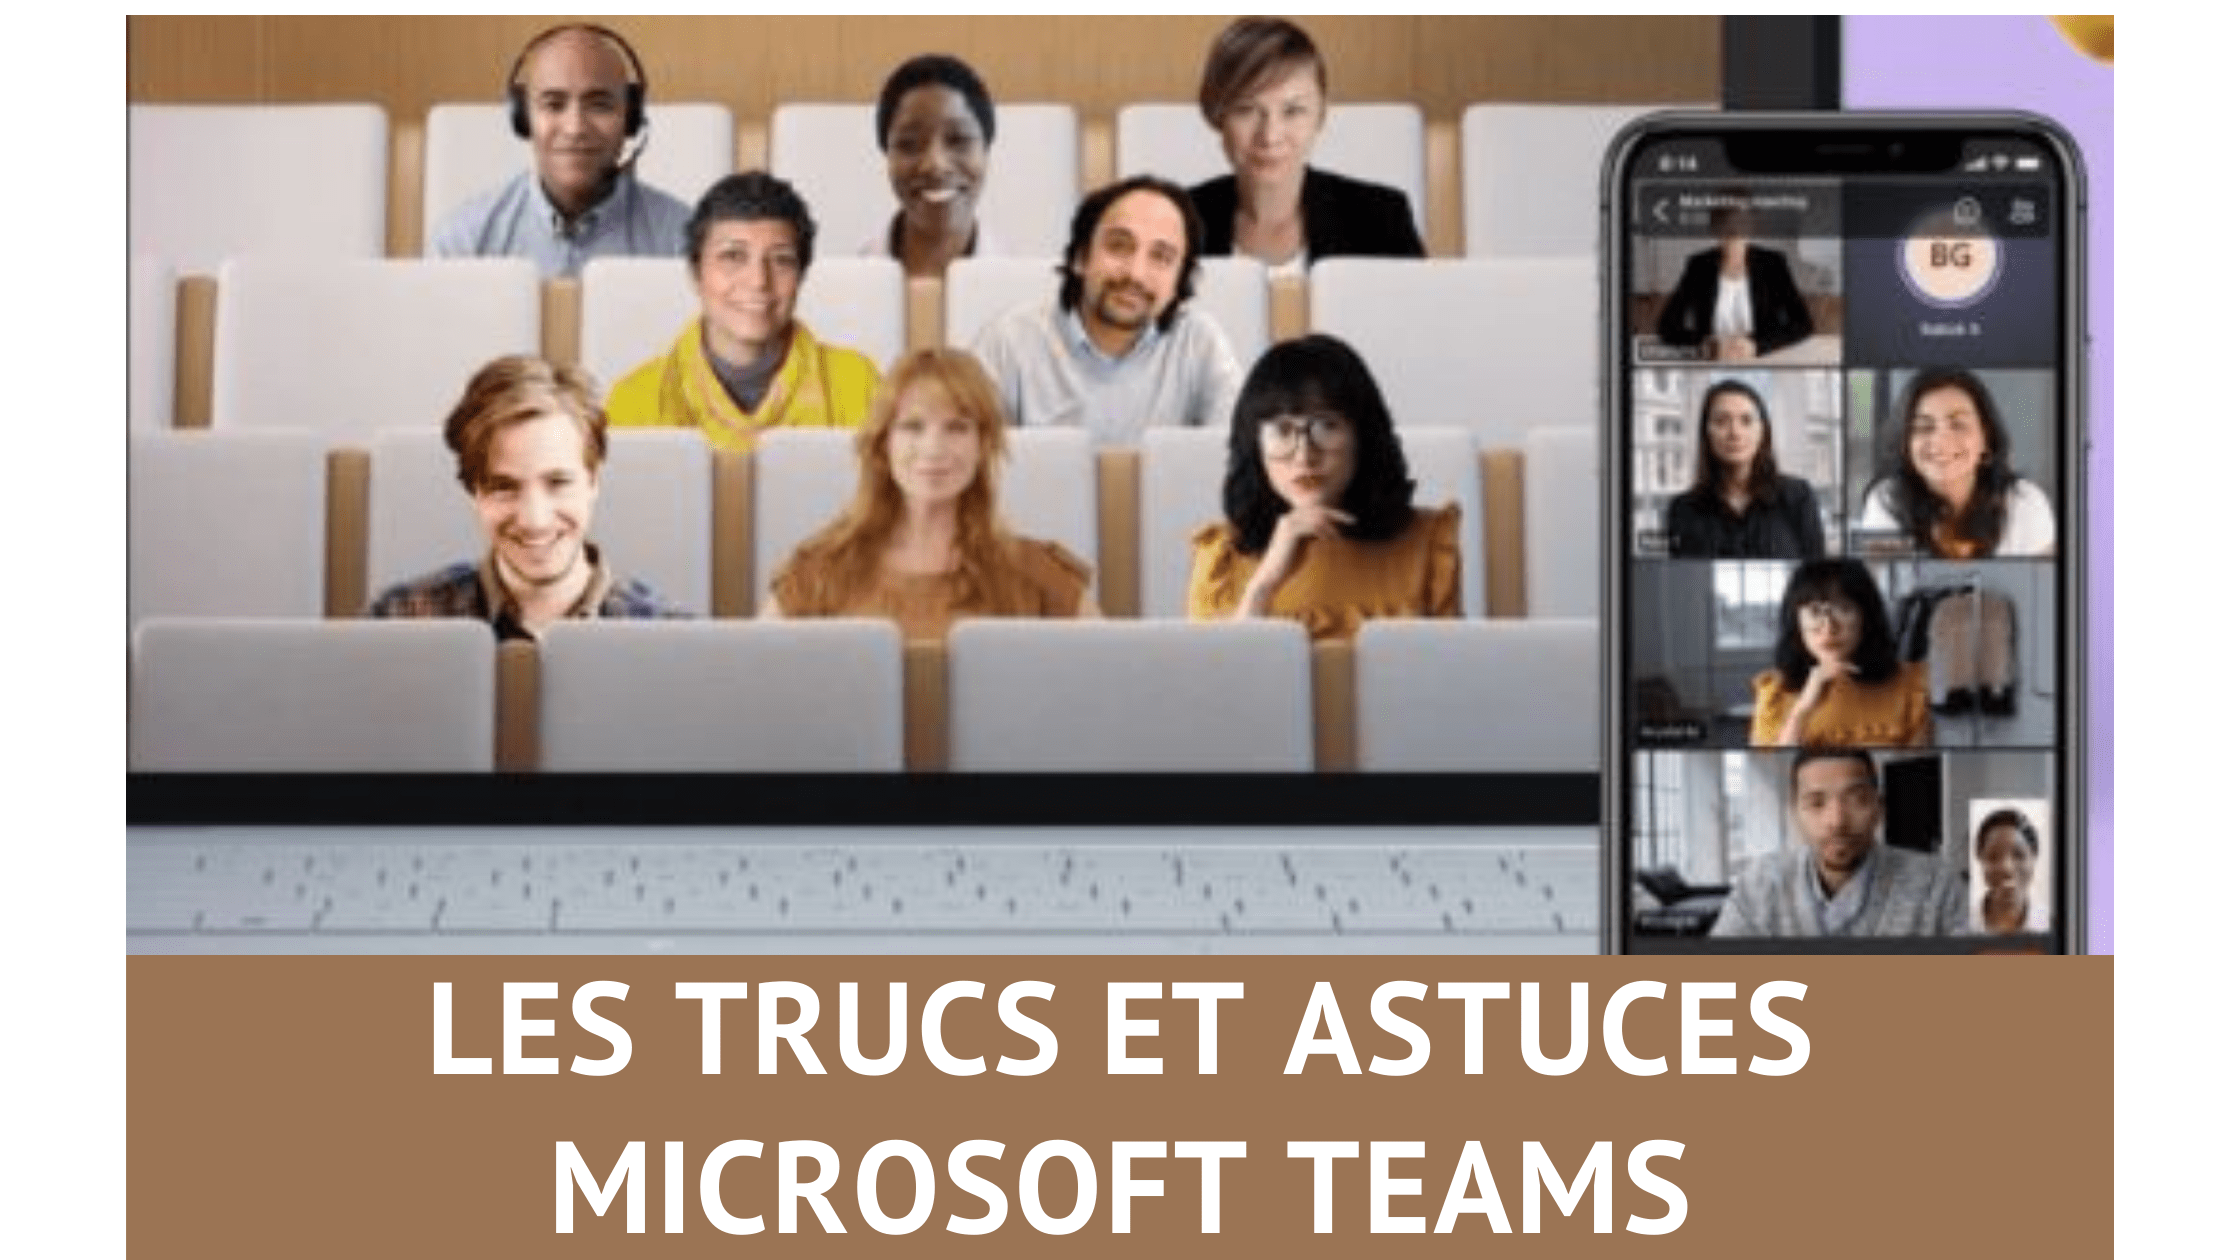 Les trucs et astuces pour Microsoft Teams, découvrez 33 fonctions méconnues de Teams ! 88